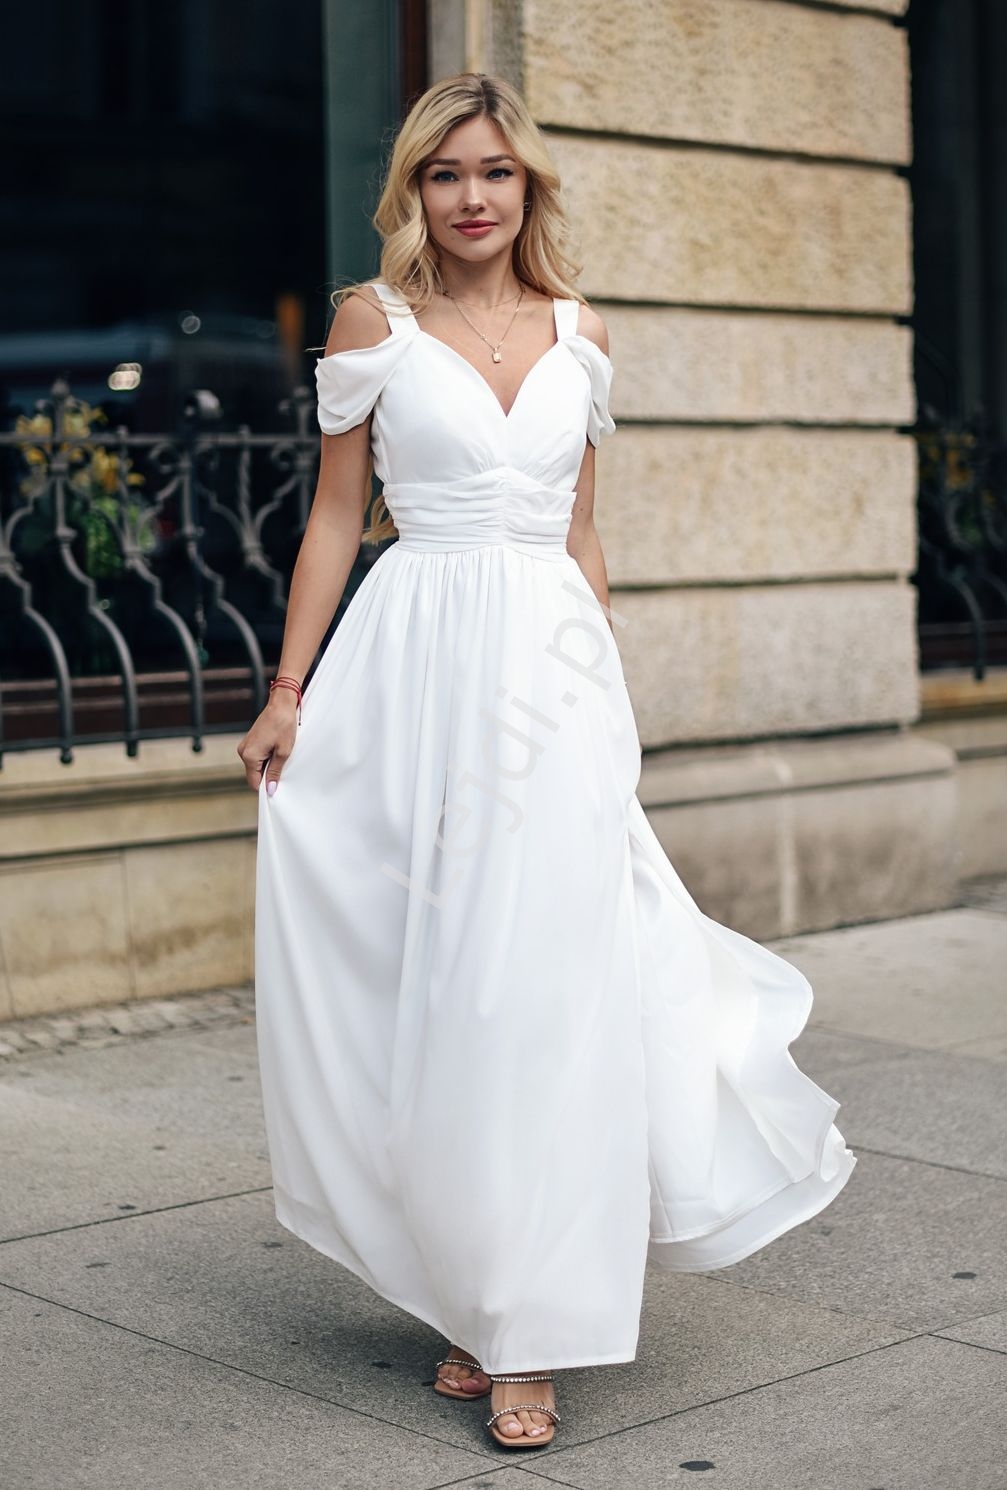 Image of Kremowo biała sukienka ślubna w romantycznym stylu KM315